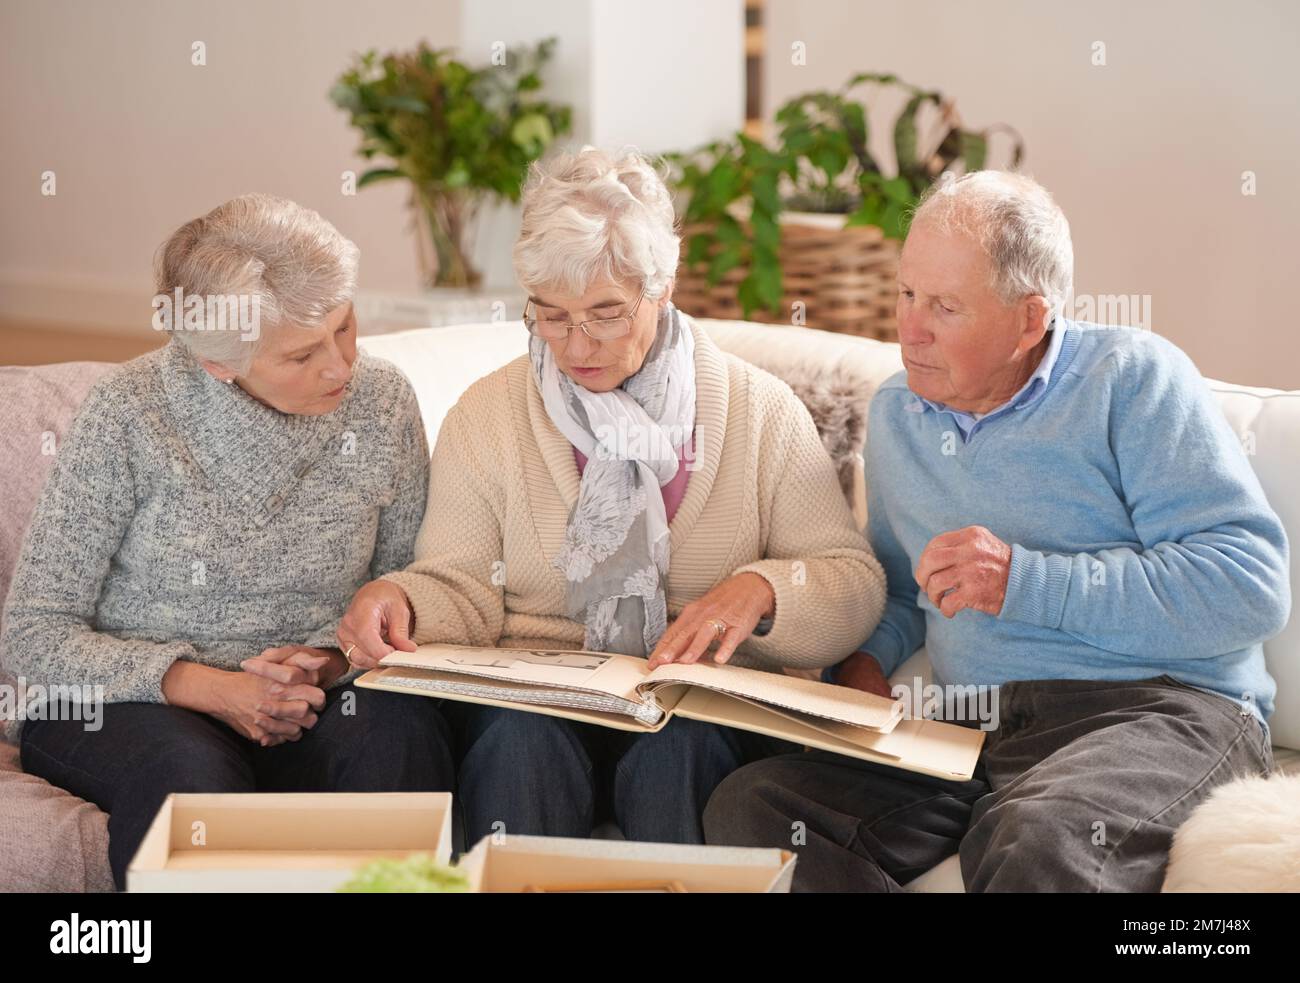 Menschen ändern sich, Erinnerungen nicht. senioren, die ein Fotoalbum durchsehen. Stockfoto